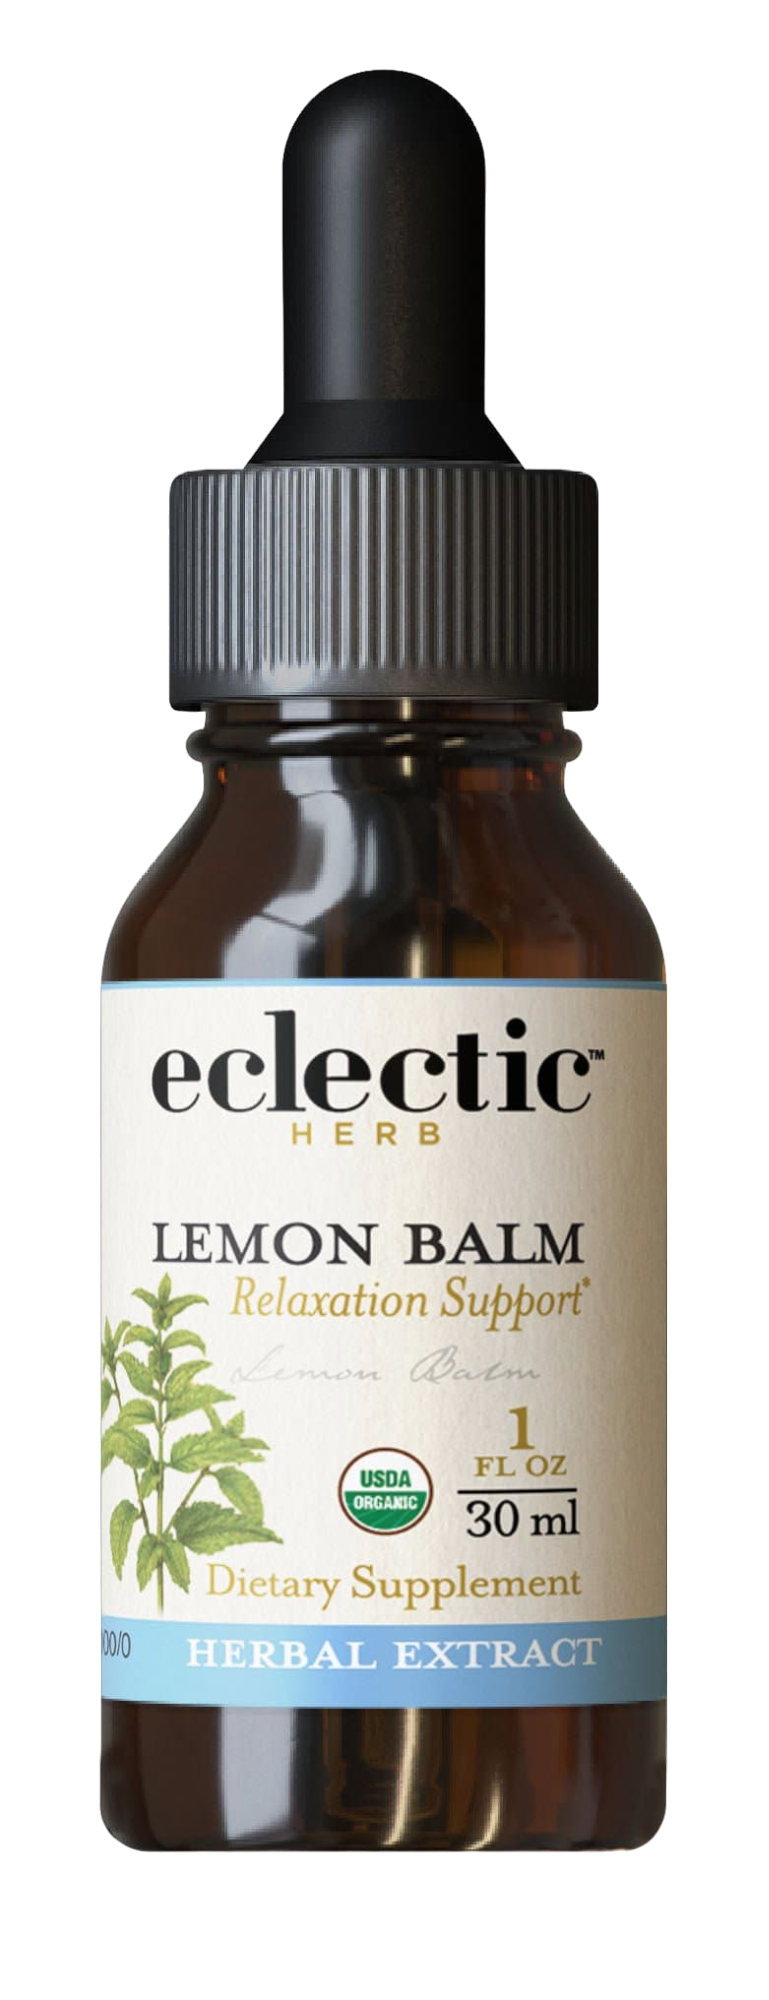 Lemon Balm extract